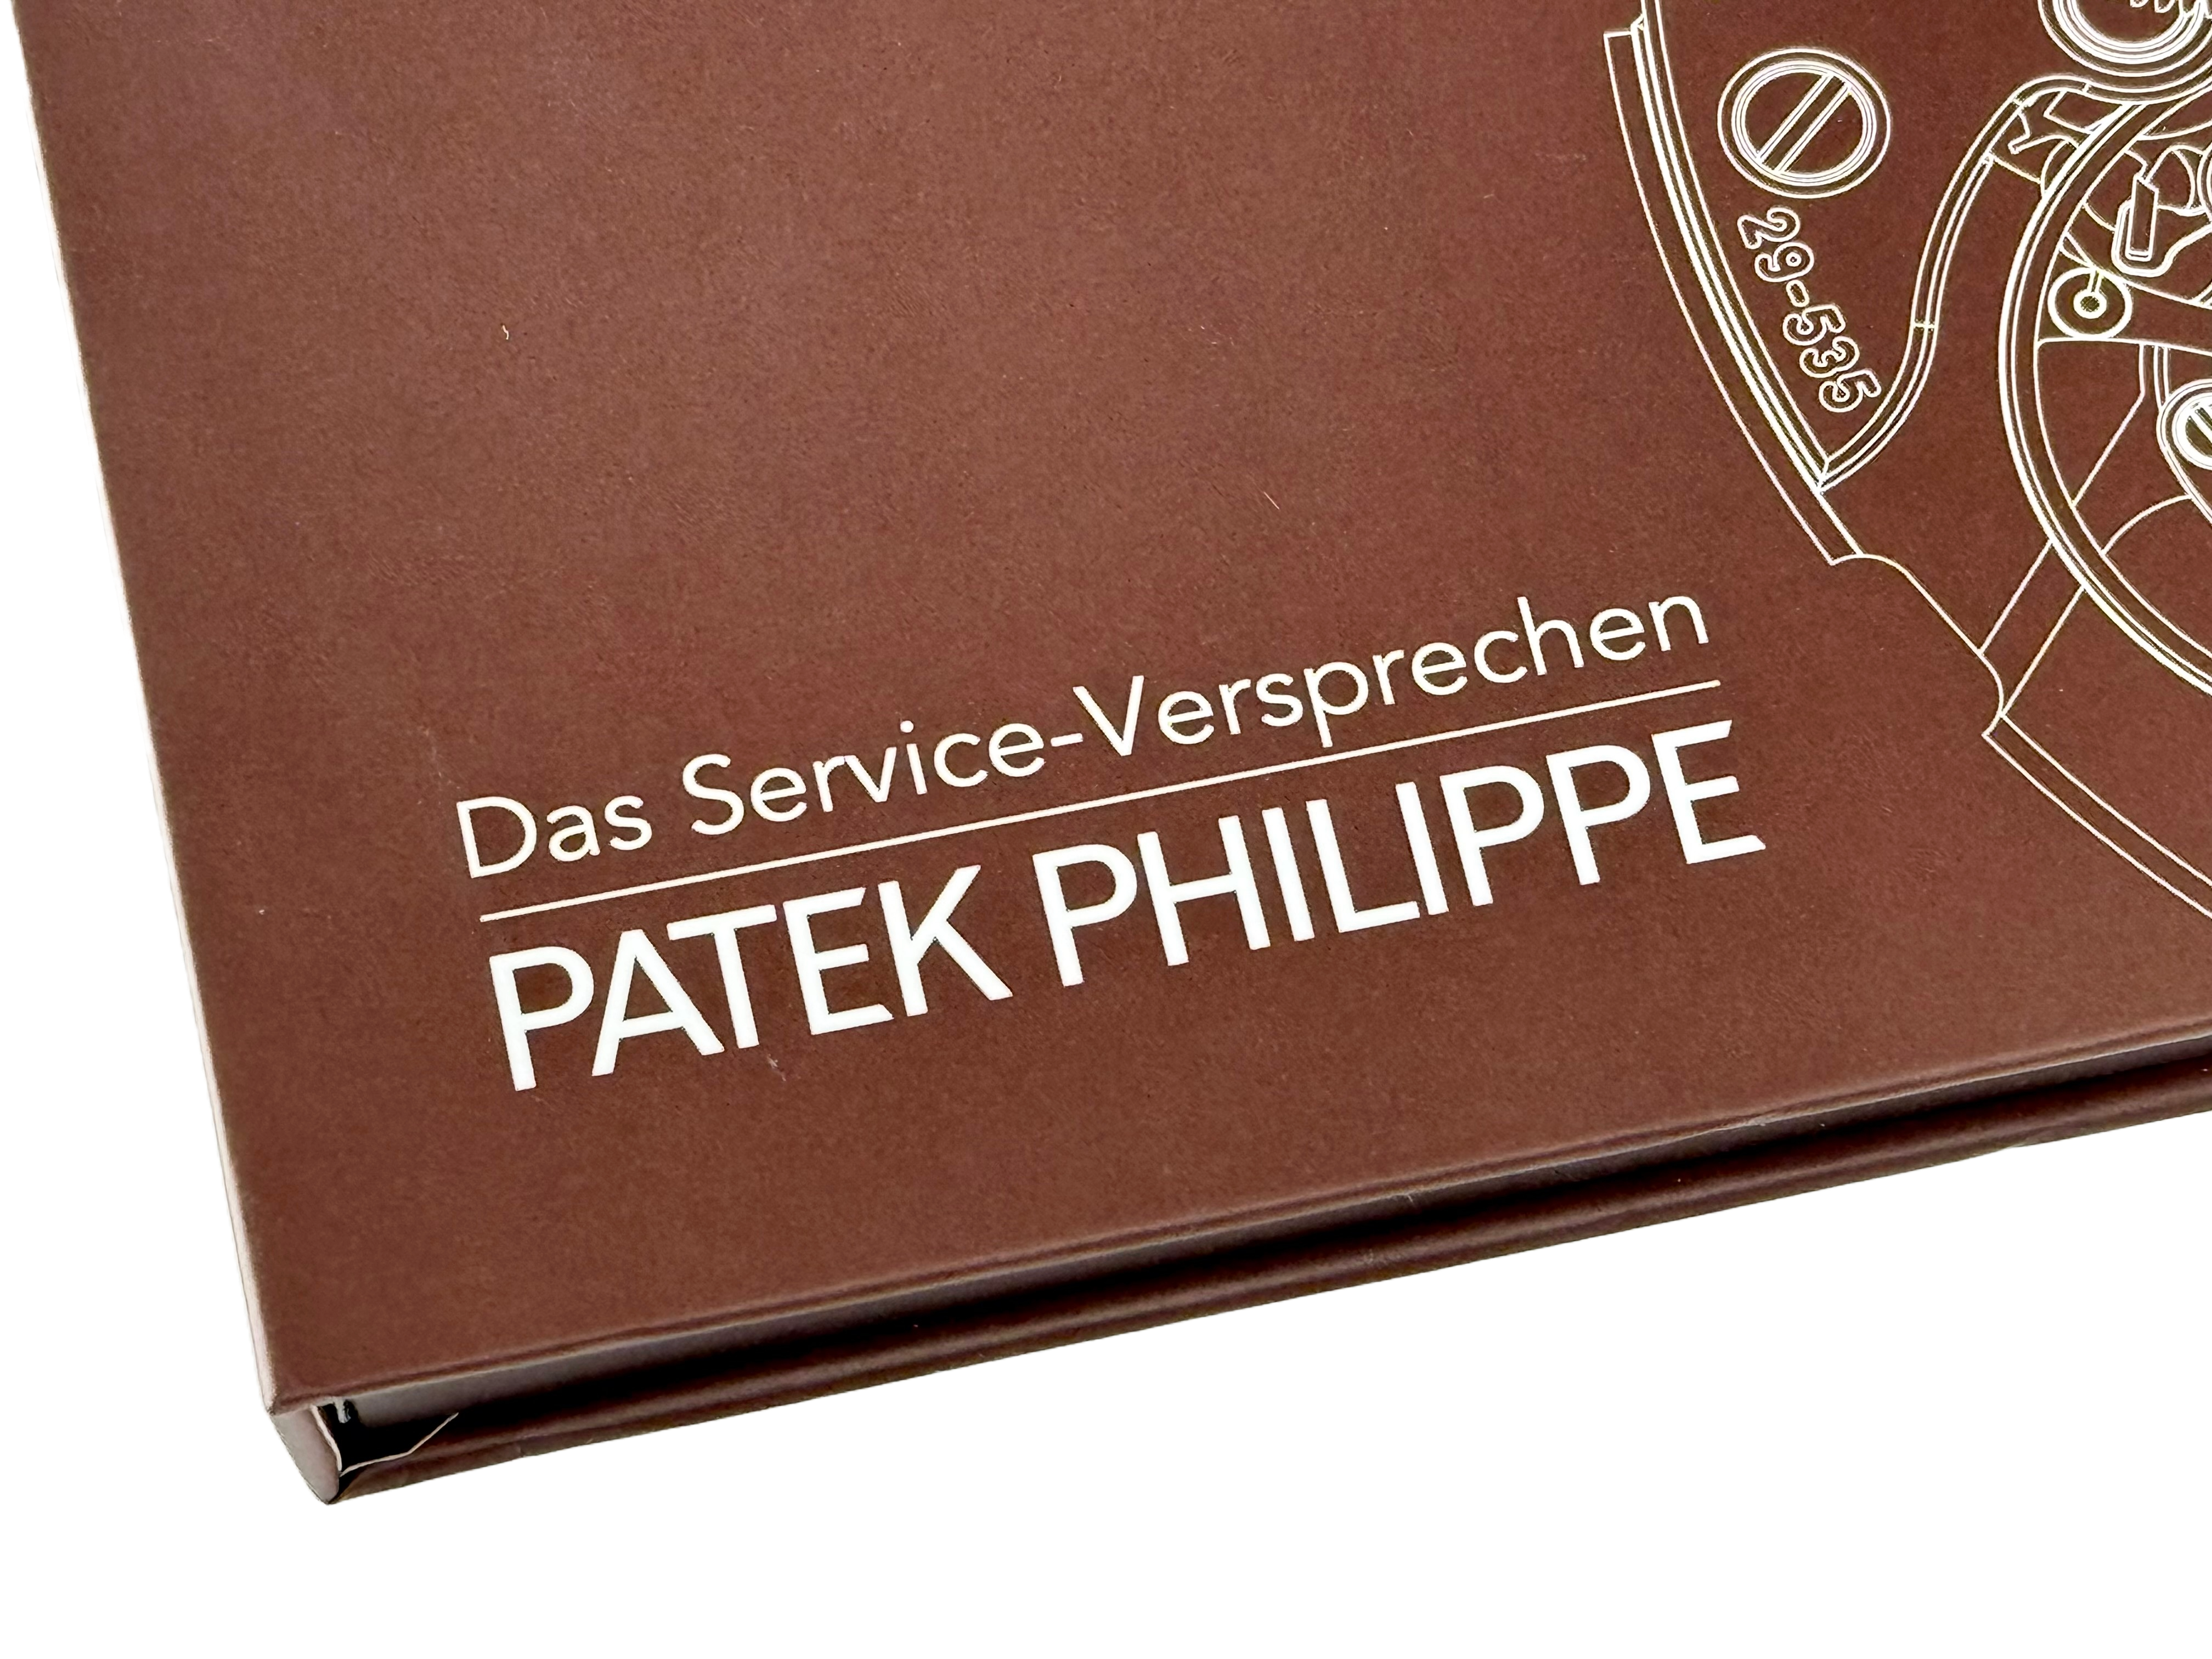 Patek Philippe Das Serviceversprechen Tablet